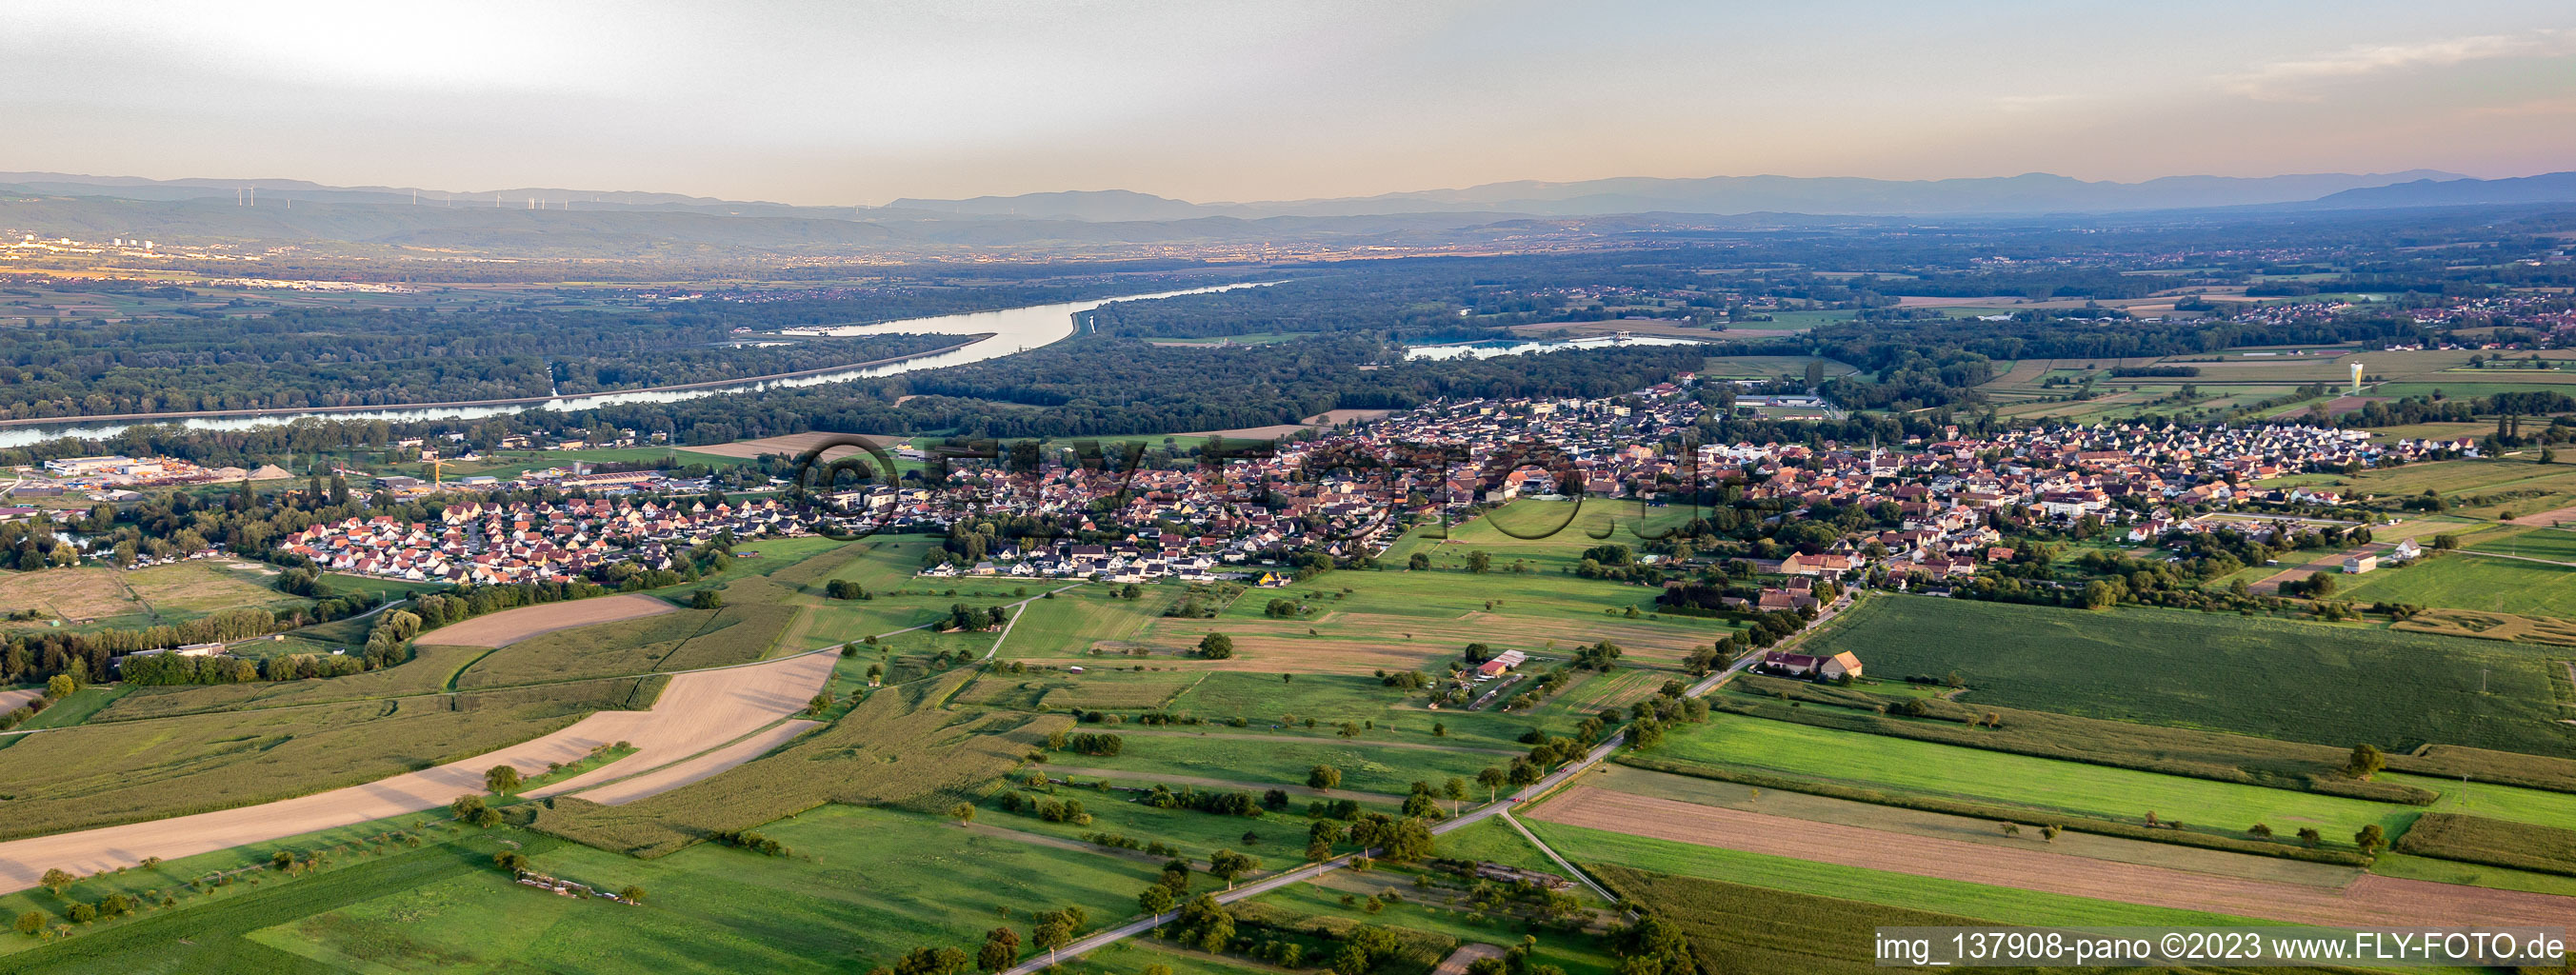 Luftbild von Panorama in Gerstheim im Bundesland Bas-Rhin, Frankreich